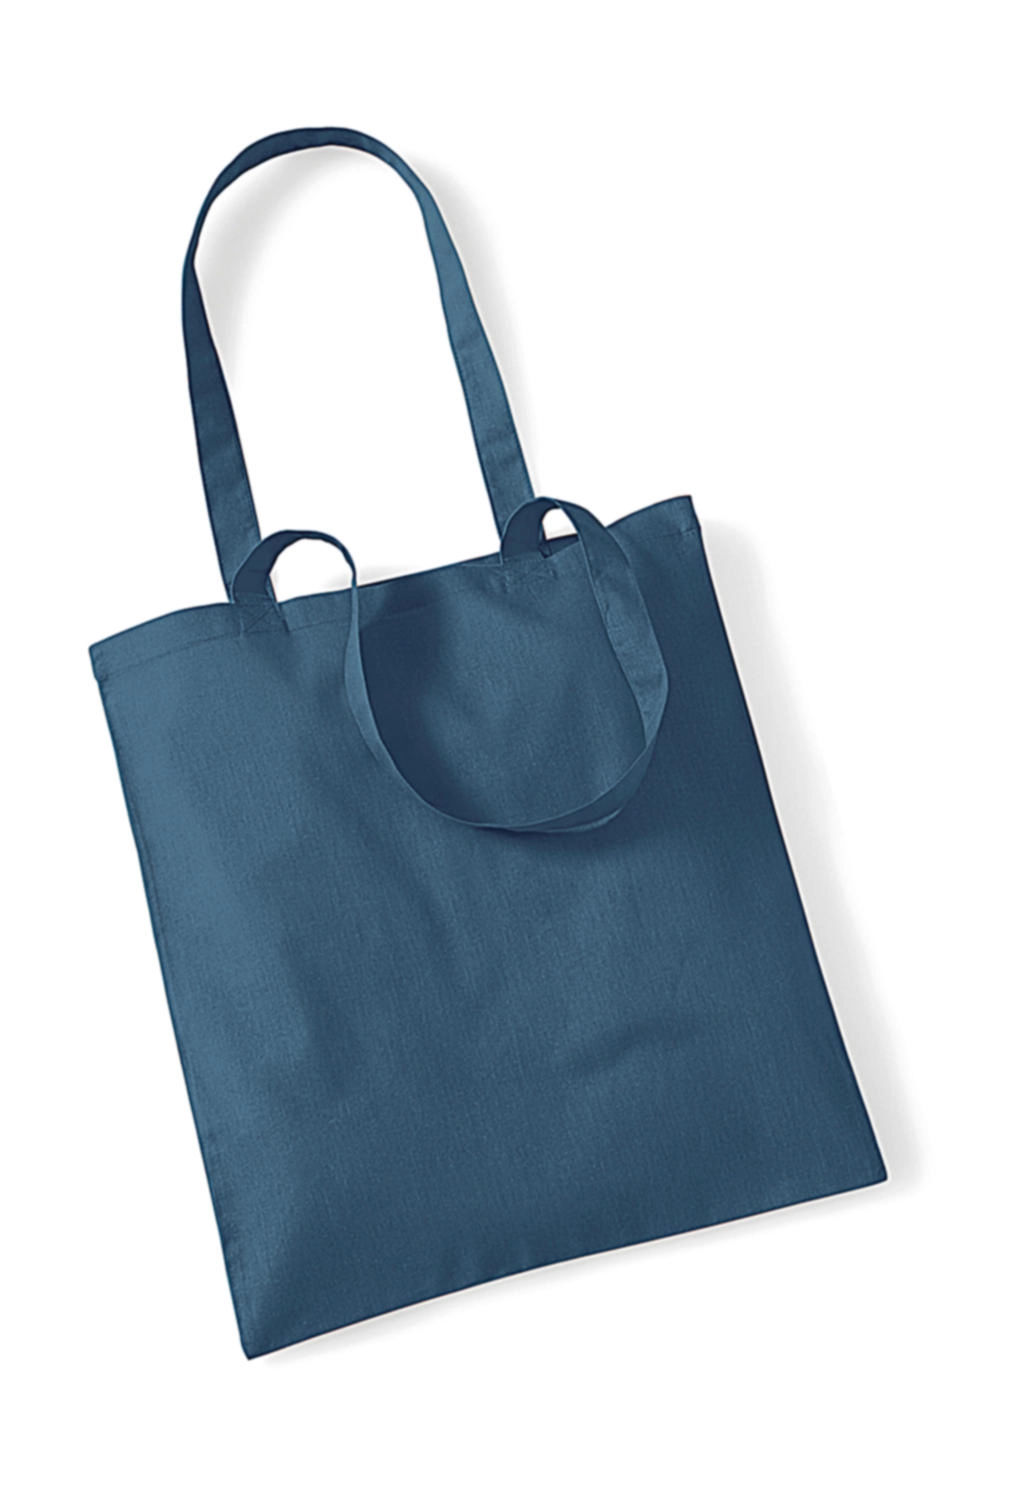 Bag for Life - Long Handles zum Besticken und Bedrucken in der Farbe Airforce Blue mit Ihren Logo, Schriftzug oder Motiv.